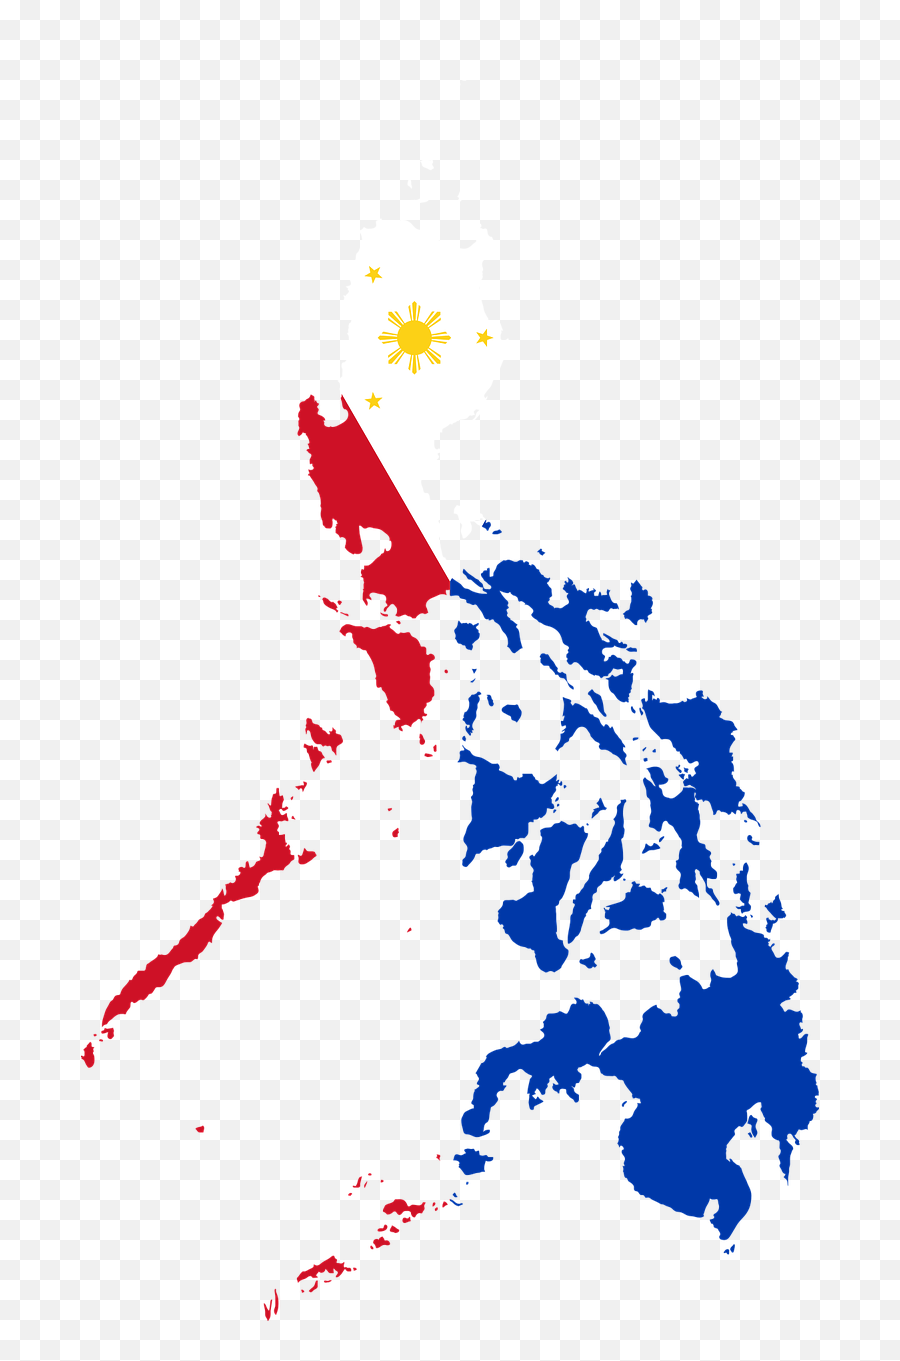 Philippines Mayor Killed At Flag - Philippines Red Blue Yellow Emoji,Bahamas Flag Emoji